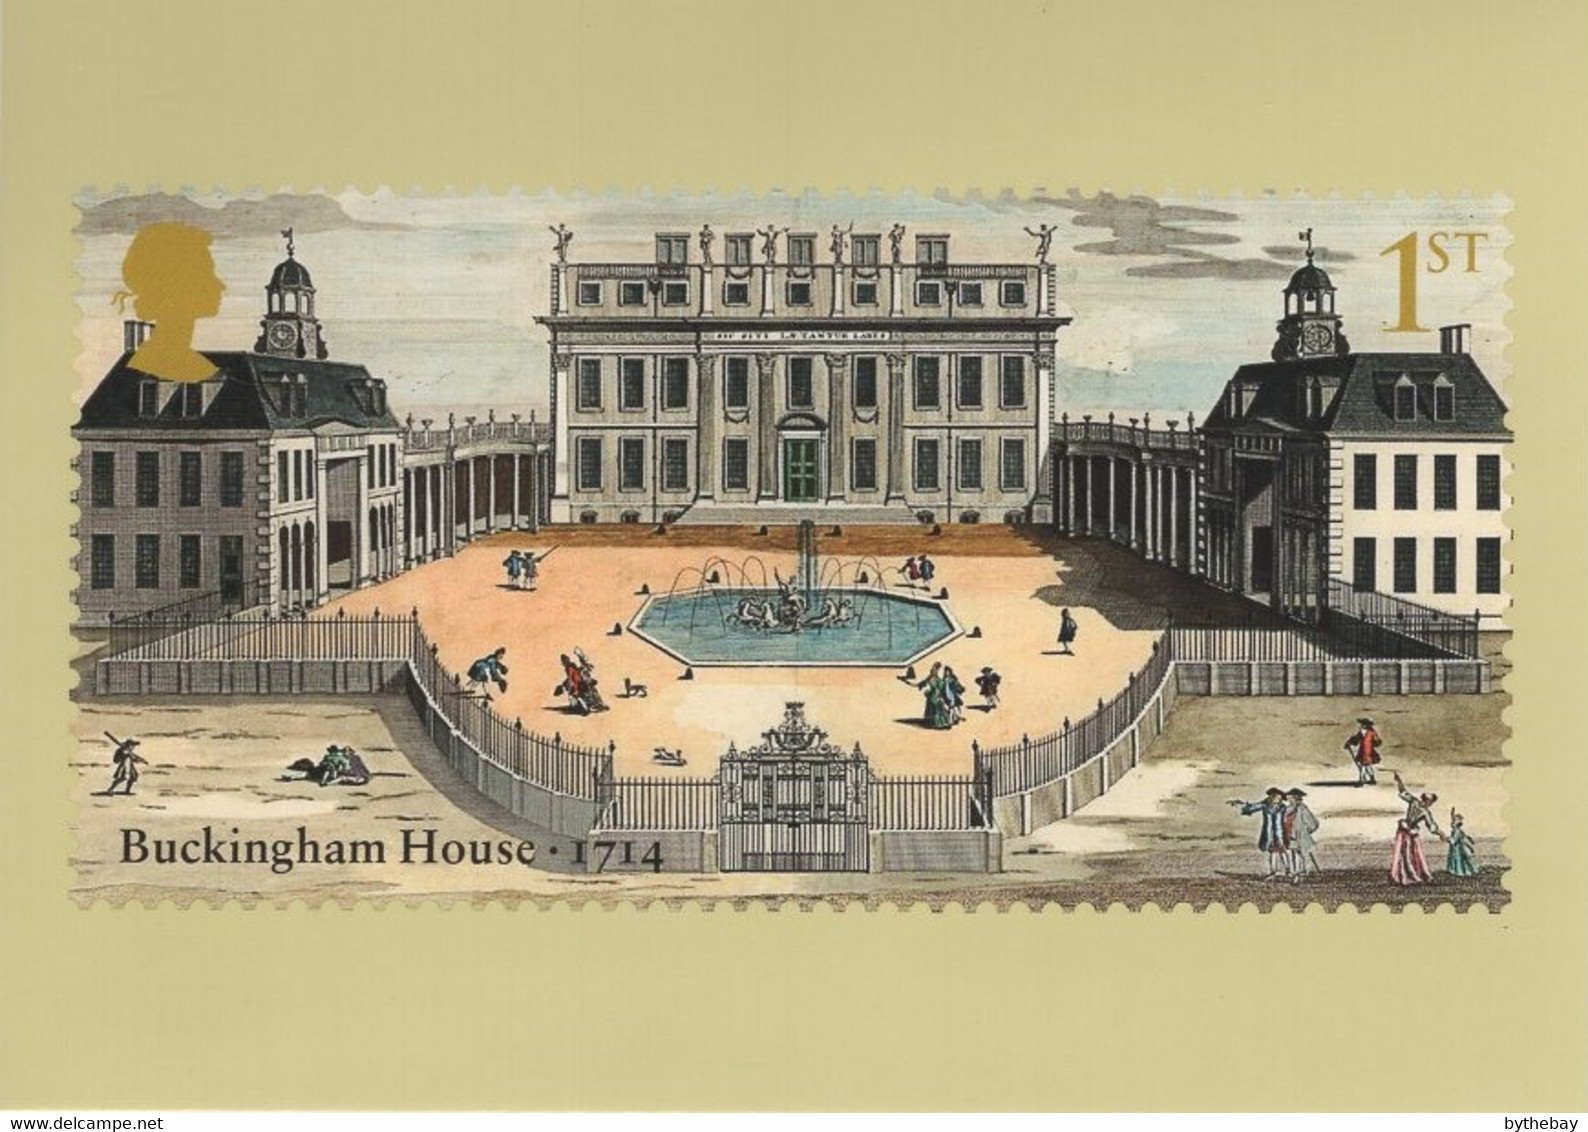 Great Britain 2014 PHQ Card Sc 3283 1st Buckingham House 1714 - PHQ Karten